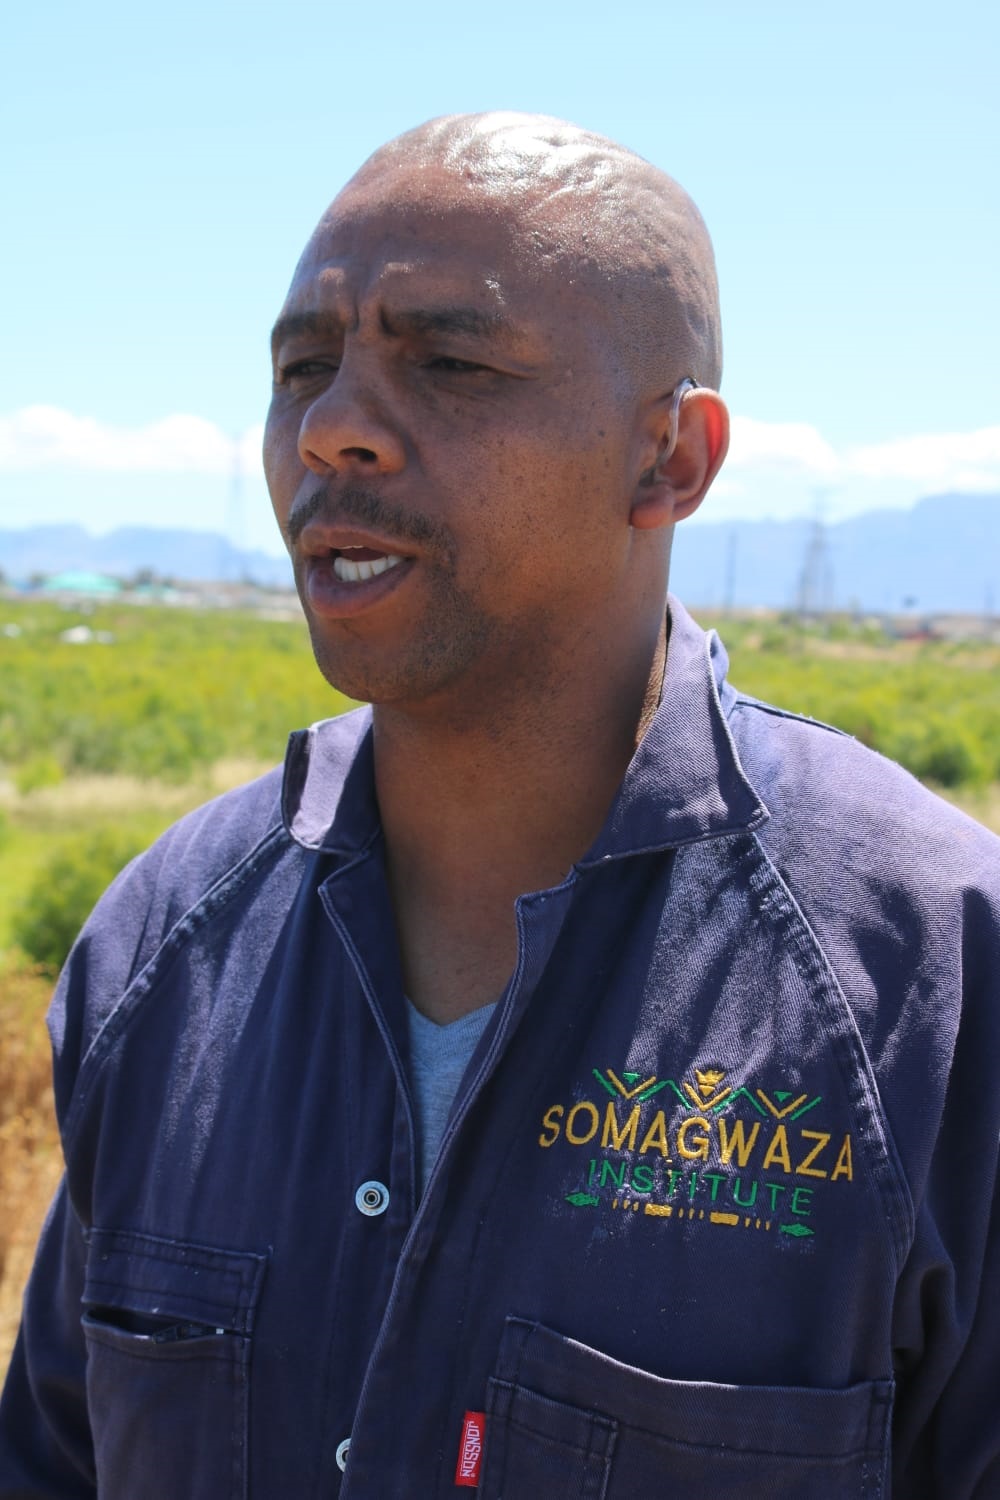 Somagwaza Insitute chairman, Sikelela 'Ndlovu' Zokufa needs support for his initiative. Photo by Lulekwa Mbadamane